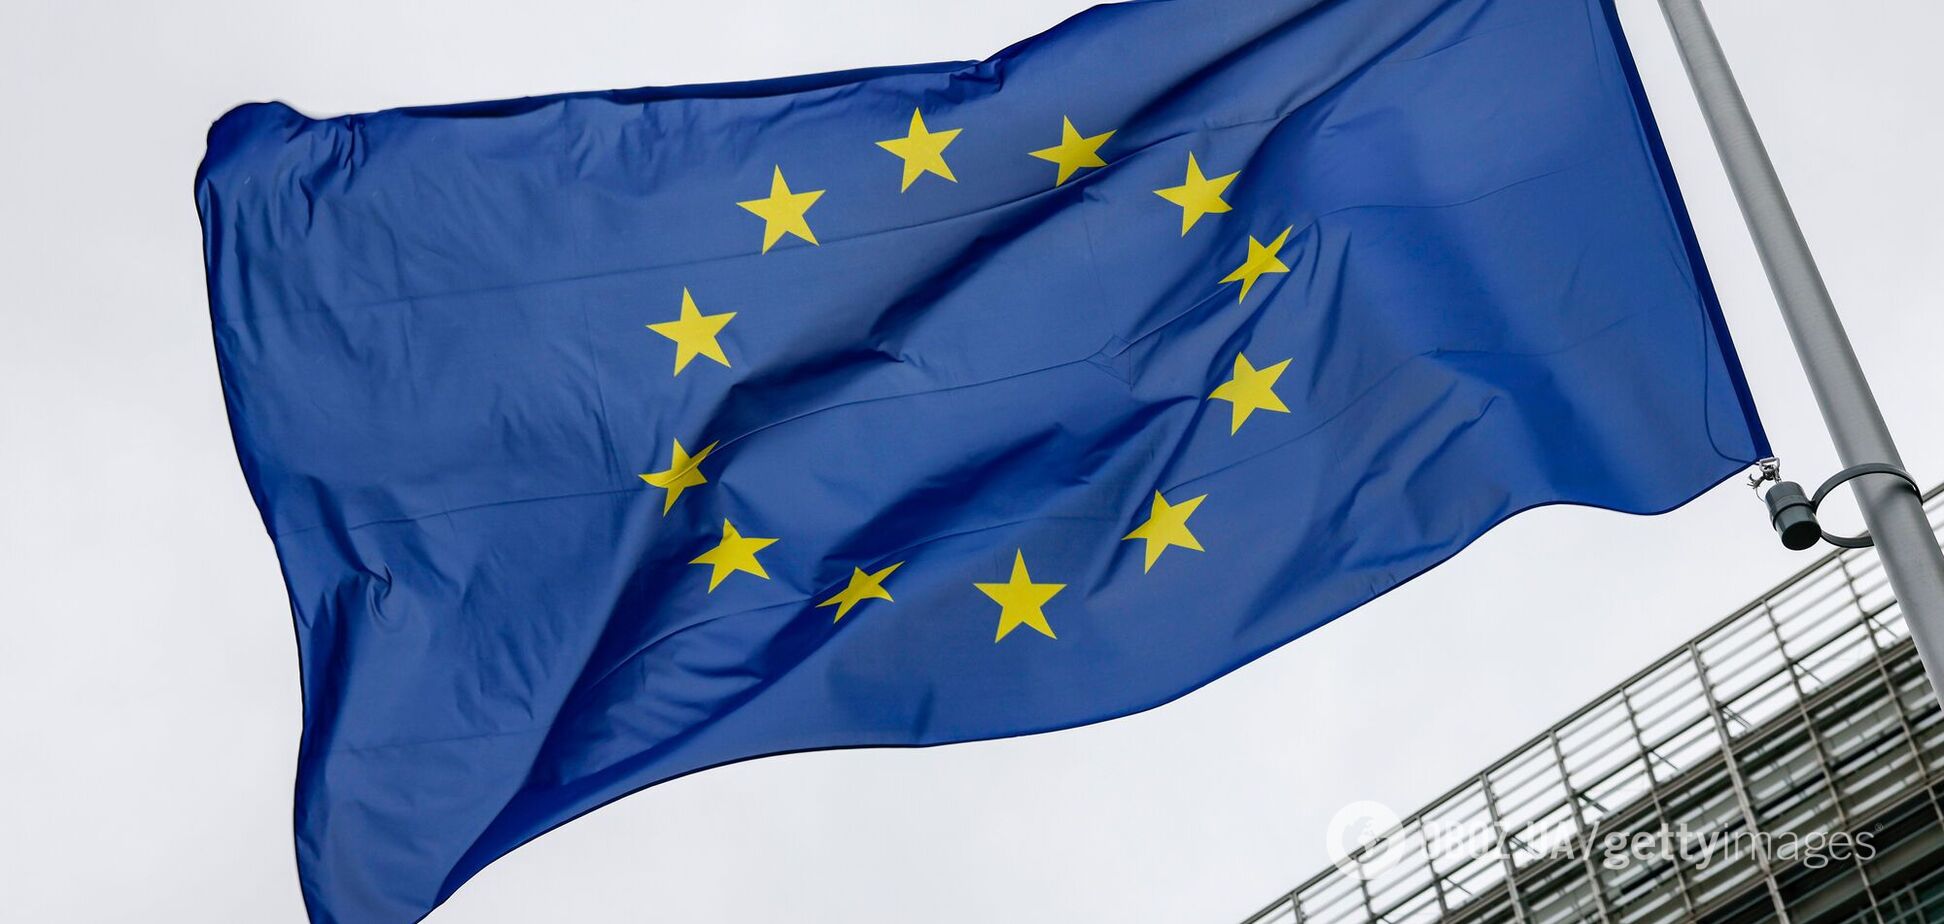 Європейська комісія прийняла пропозицію позитивно оцінити План